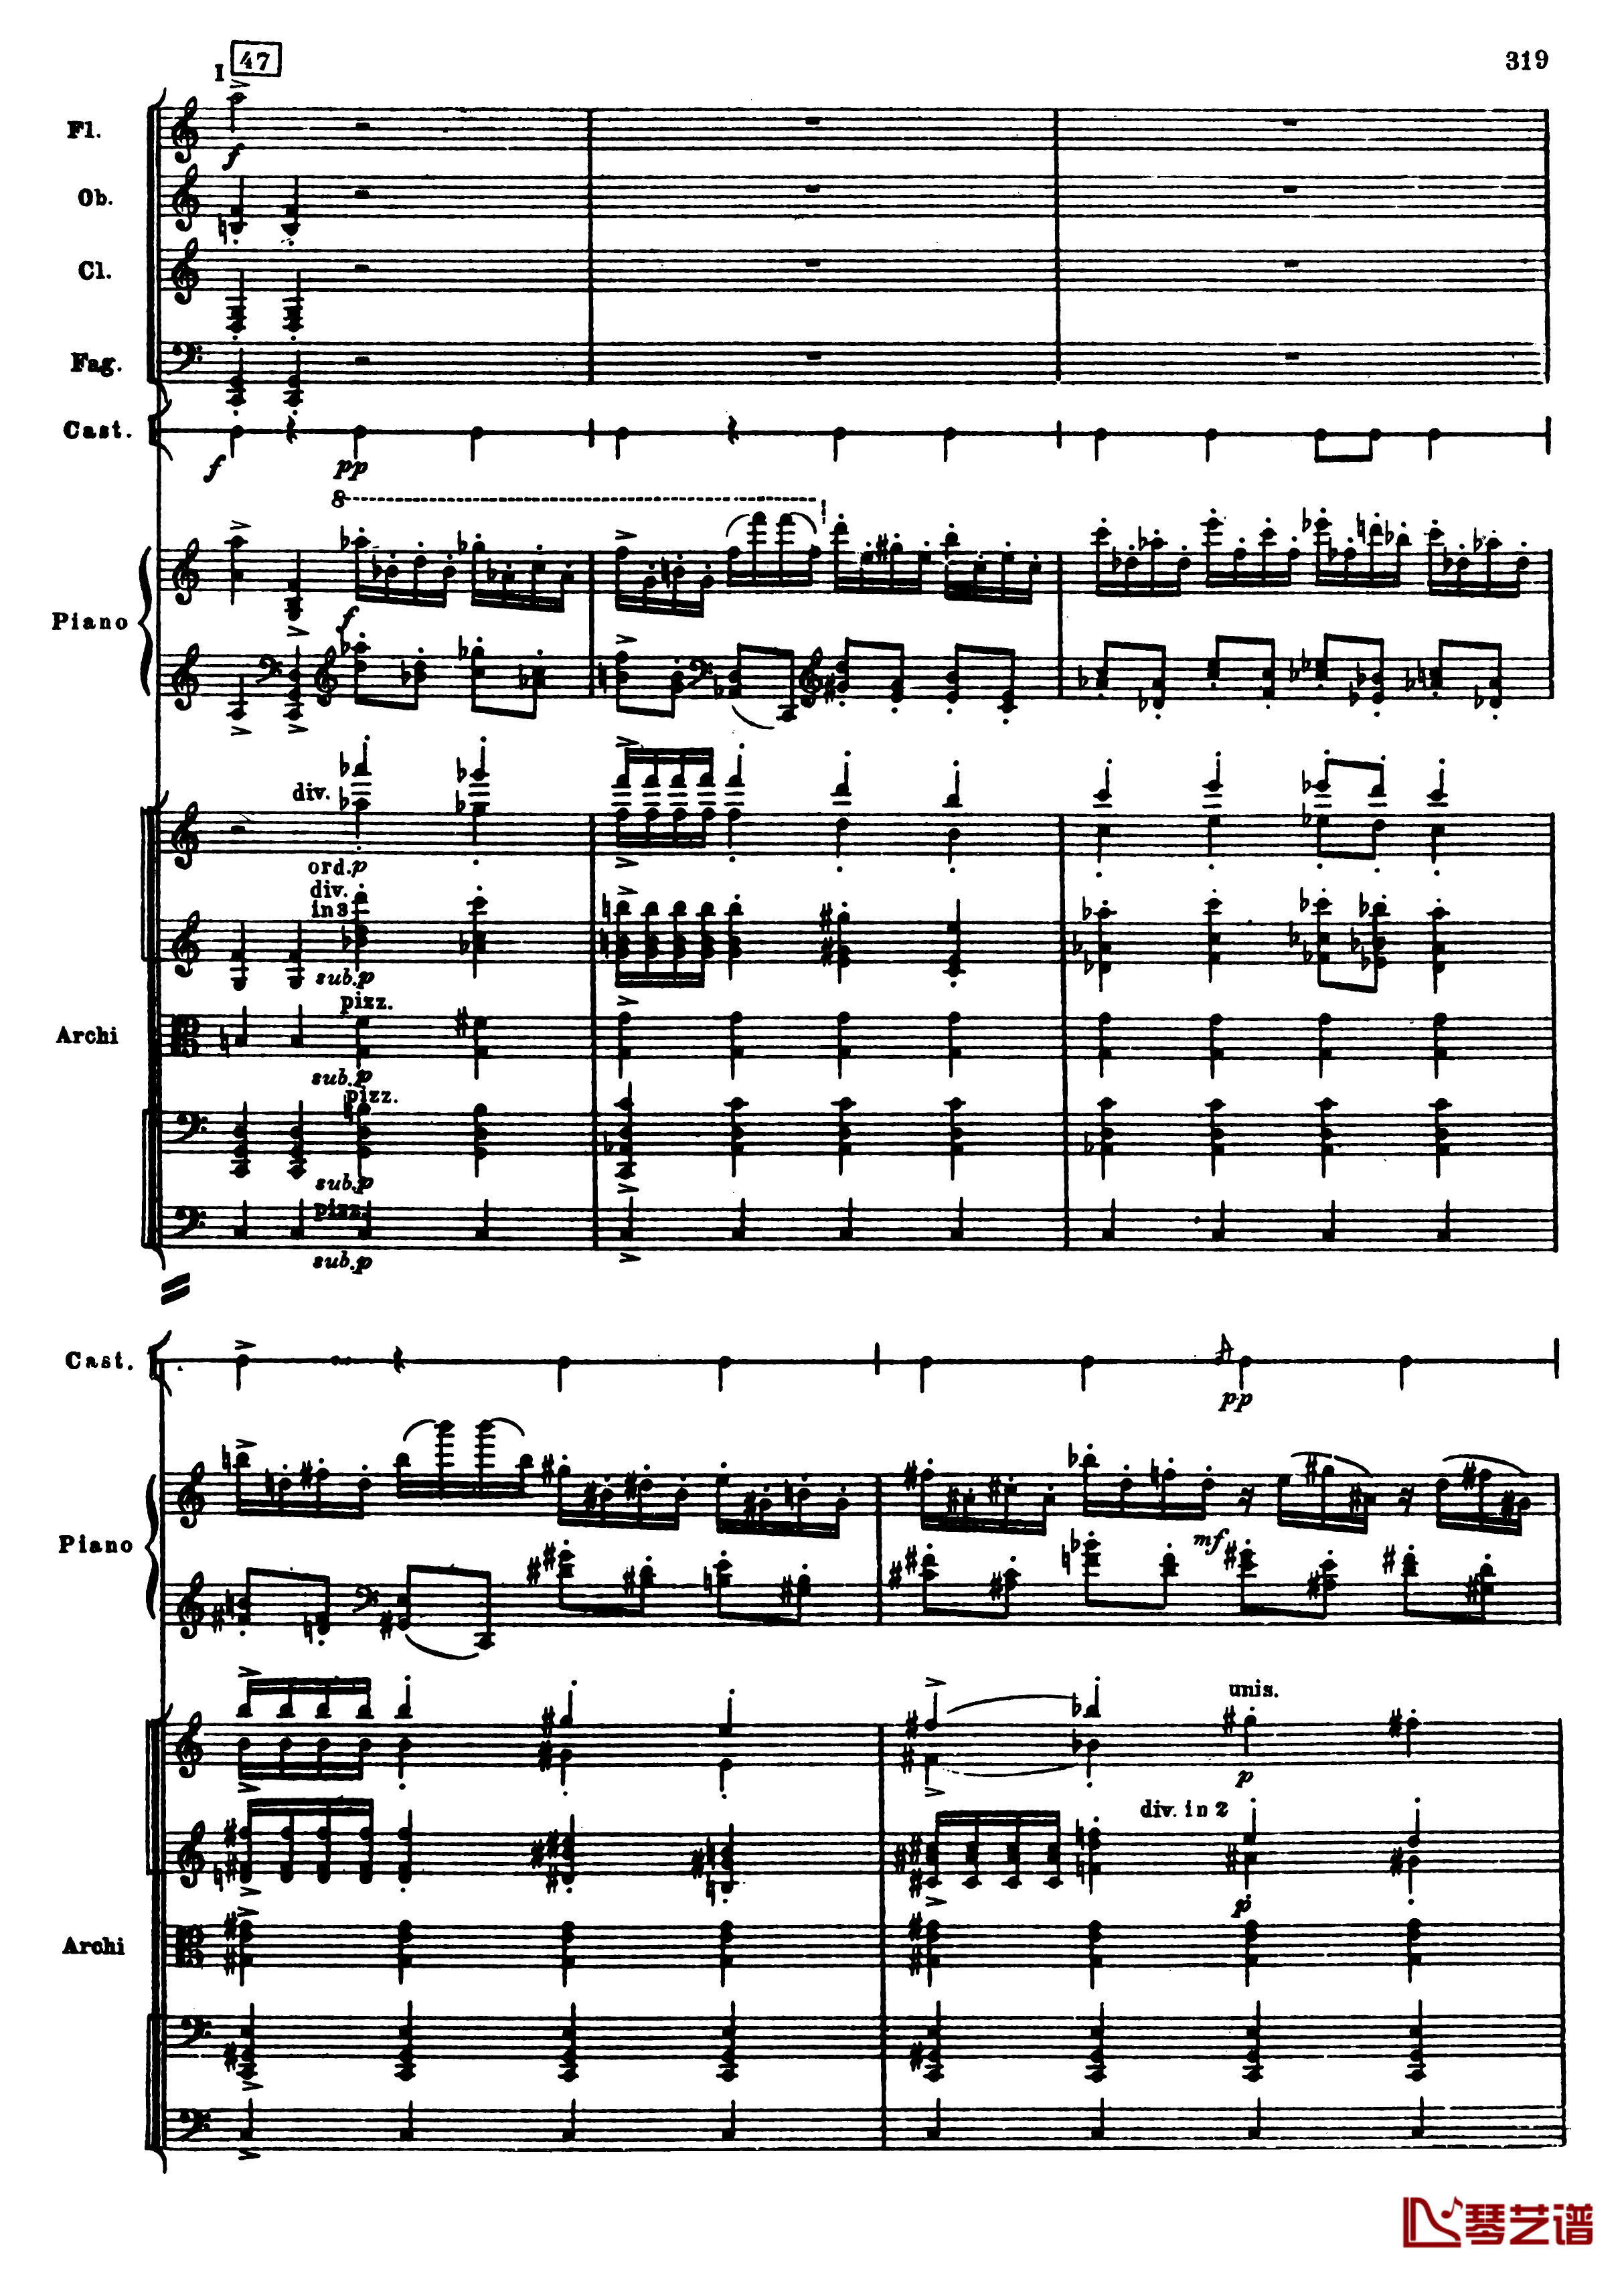 普罗科菲耶夫第三钢琴协奏曲钢琴谱-总谱-普罗科非耶夫51